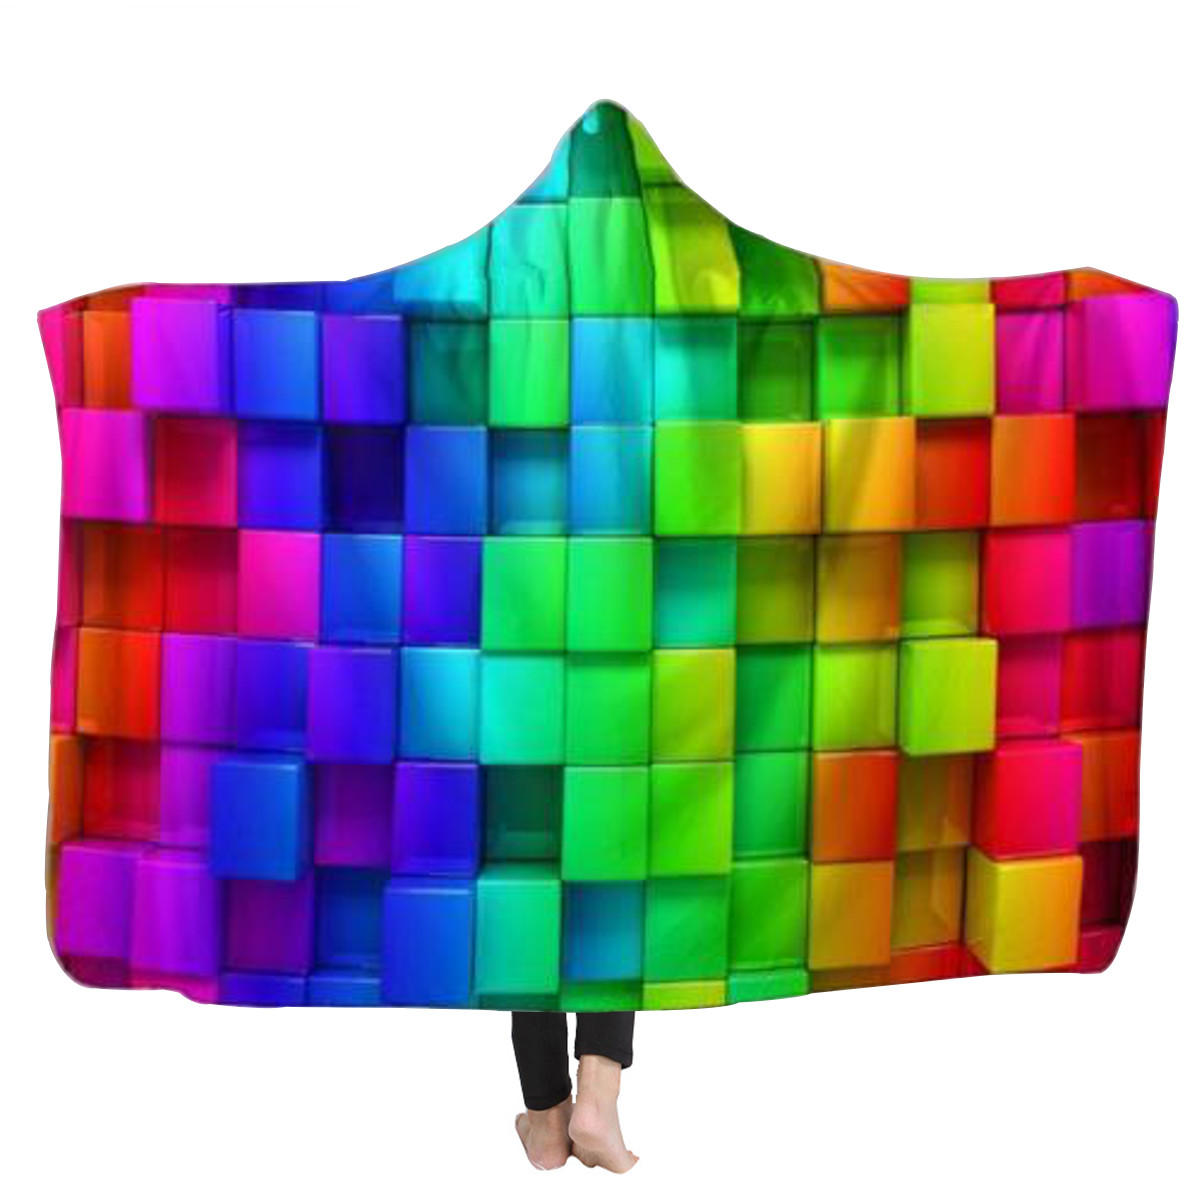 Warme 3D Farbige Würfel Mit Kapuze Decken Tragbare Soft Handtuch Plüsch Matte Für Erwachsene Kid